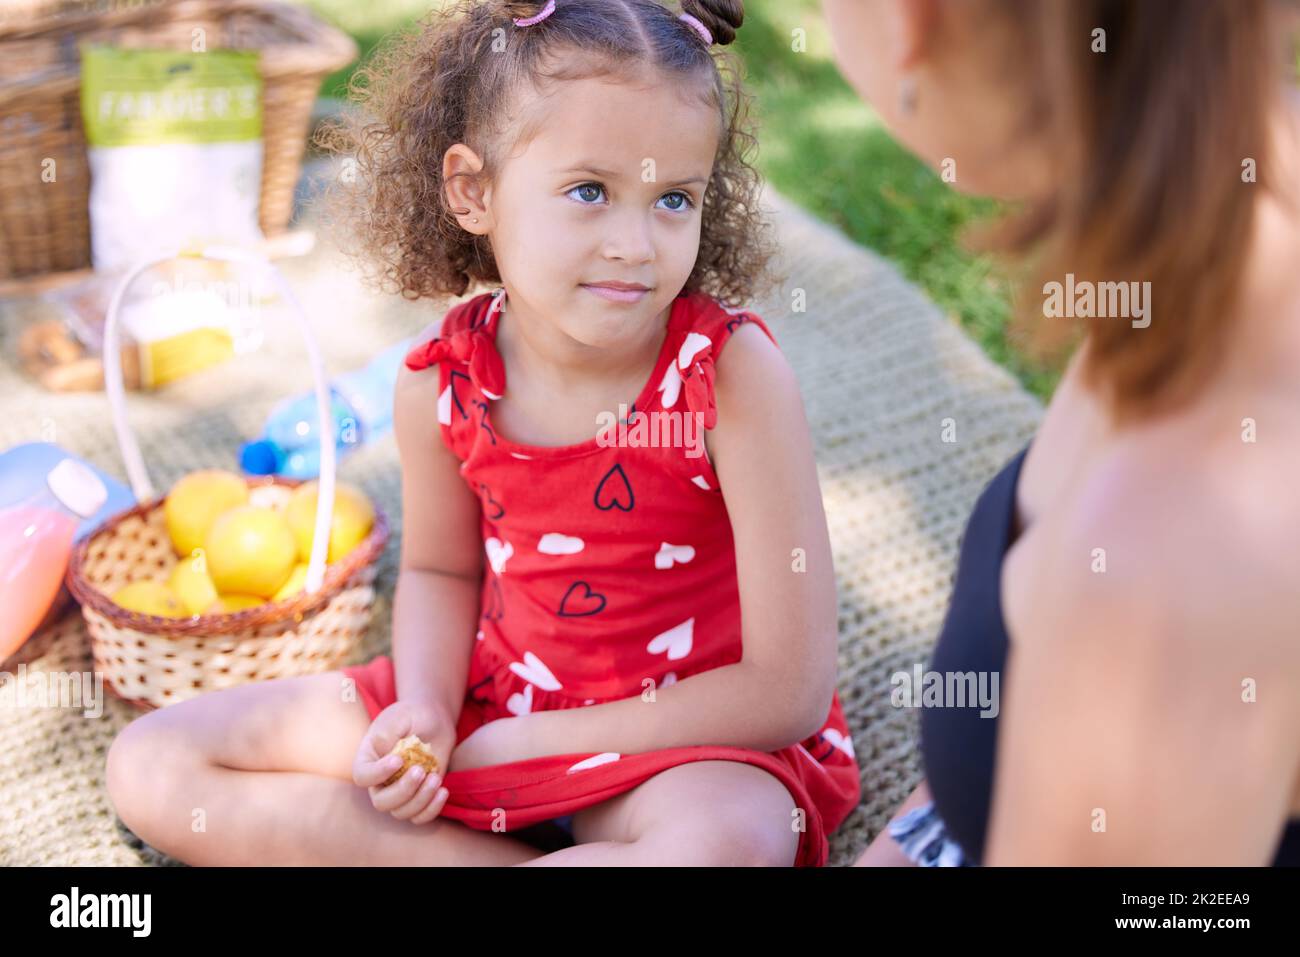 Mama kann einfach nicht nein sagen, wenn ich dieses Gesicht mache. Aufnahme eines entzückenden kleinen Mädchens bei einem Picknick im Park mit ihrer Mutter. Stockfoto